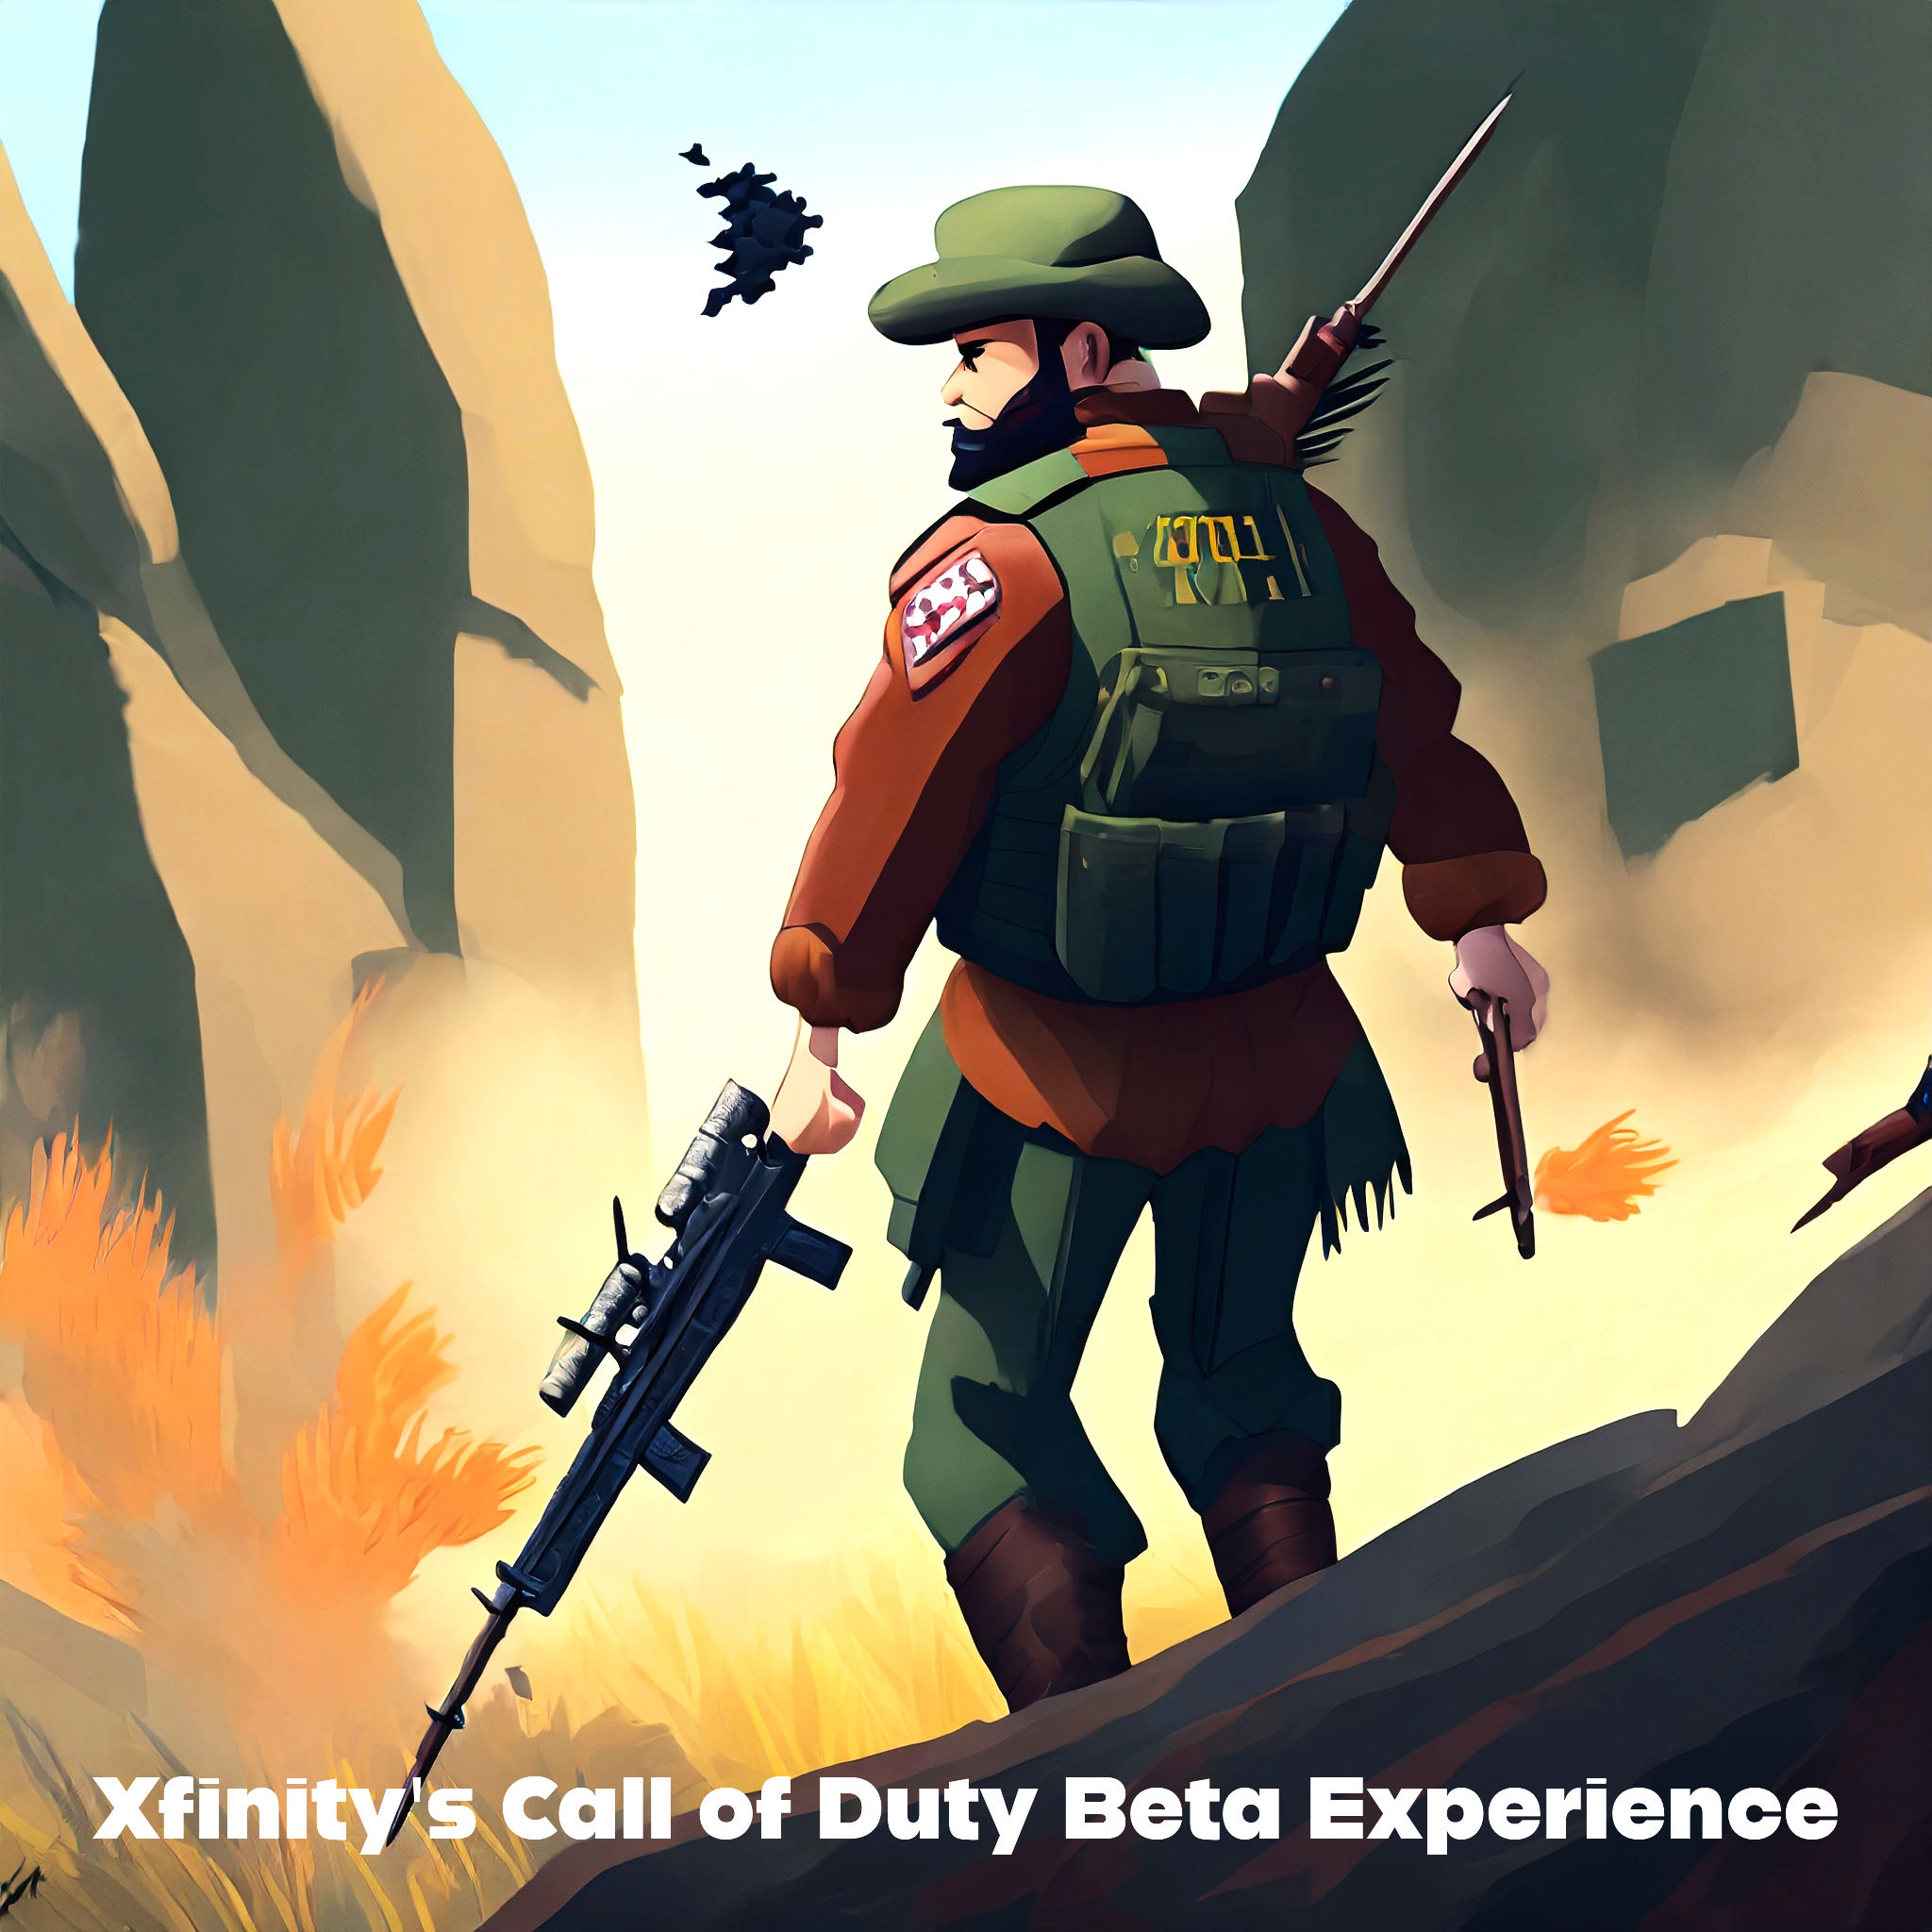 Xfinity Call of Duty Beta Experience